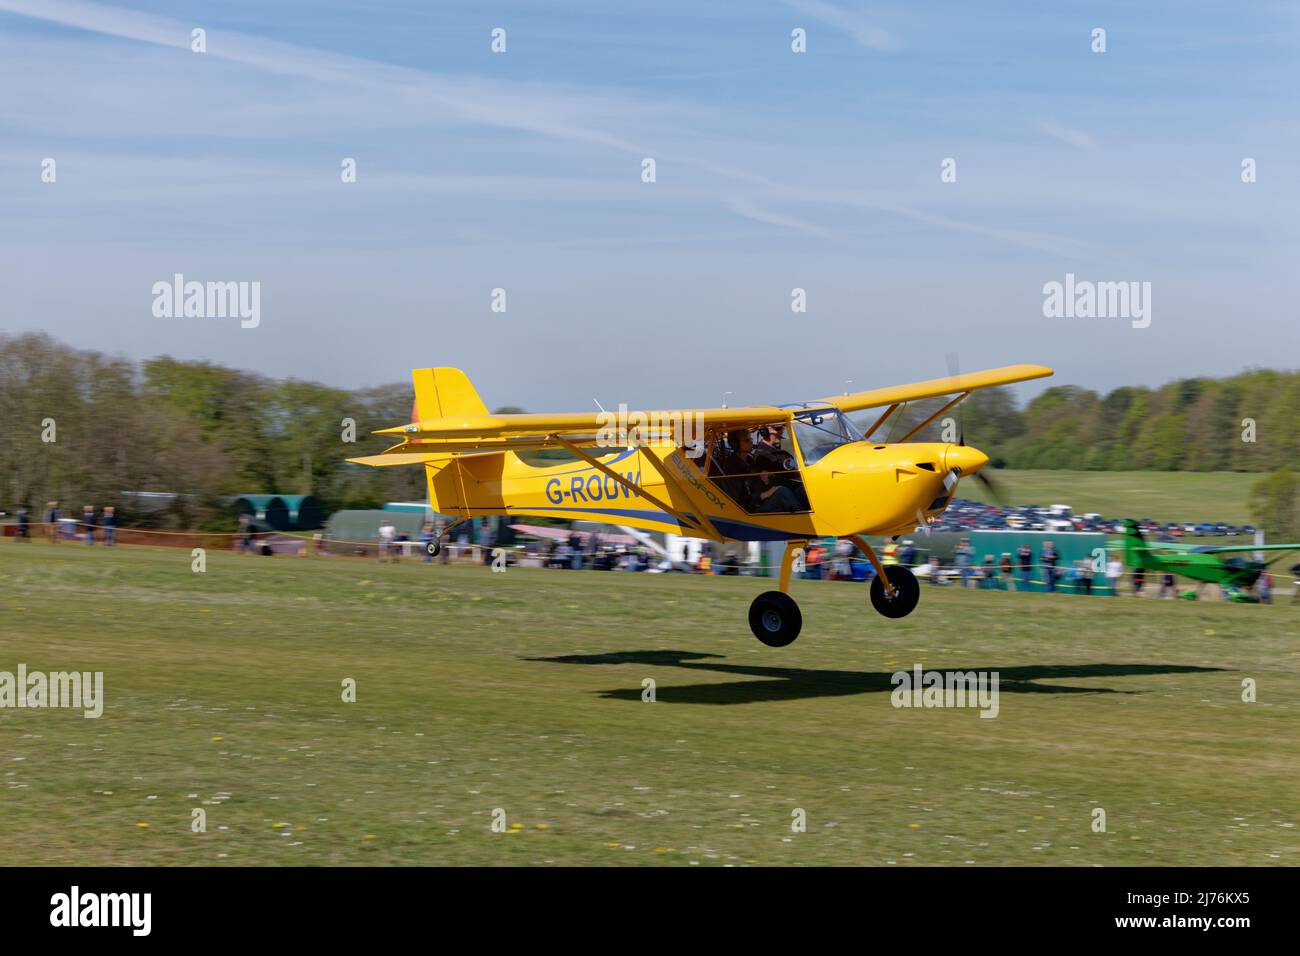 El avión ligero G-RODW AeroPro EUROFOX amarillo brillante llega al aeródromo de Popham, en Hampshire, Inglaterra, para asistir a la reunión anual de aviones ultraligeros Foto de stock